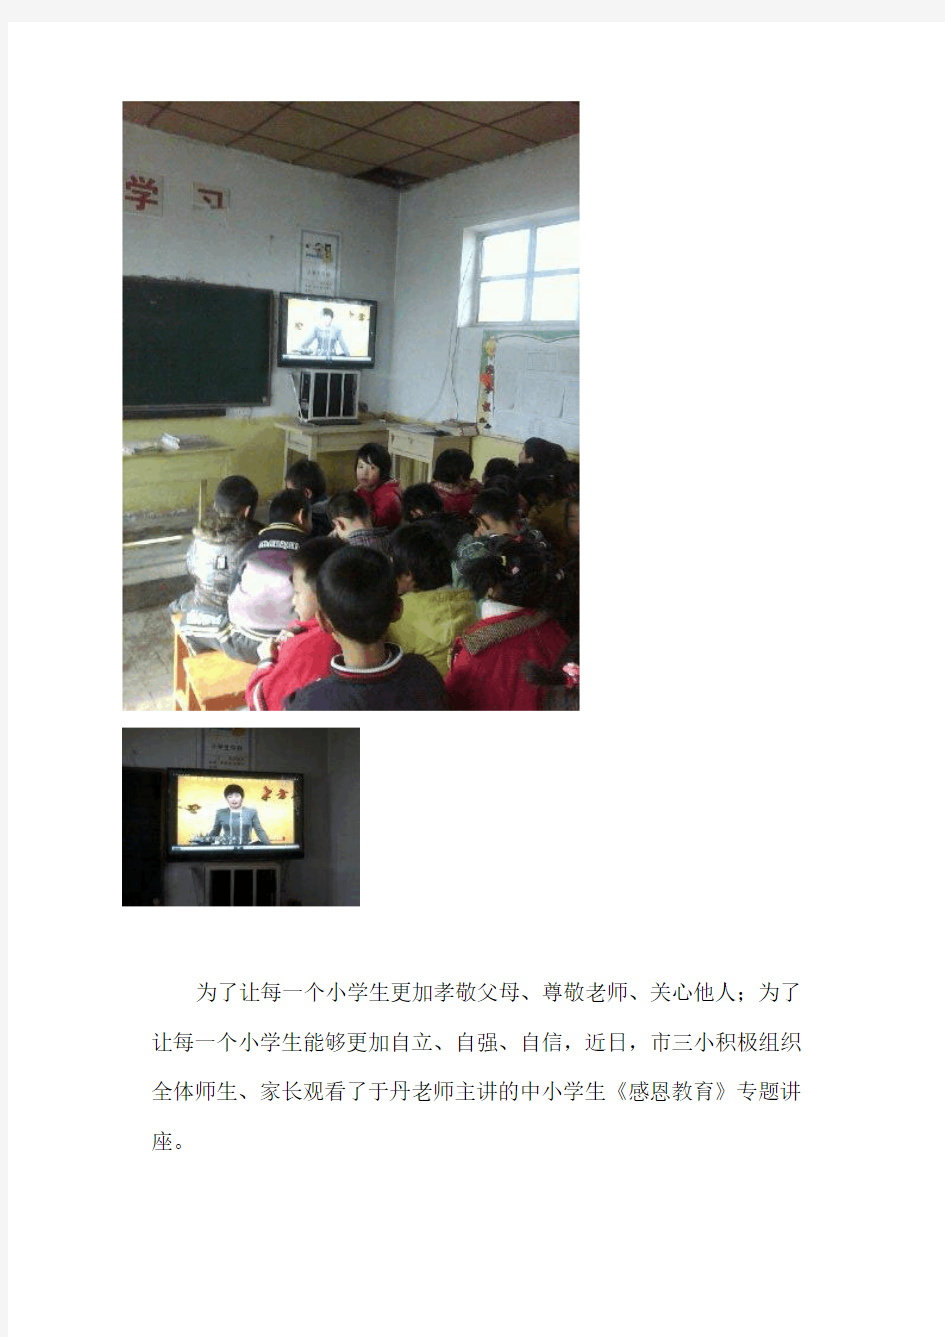 礼号小学组织学生观看于丹专题讲座视频